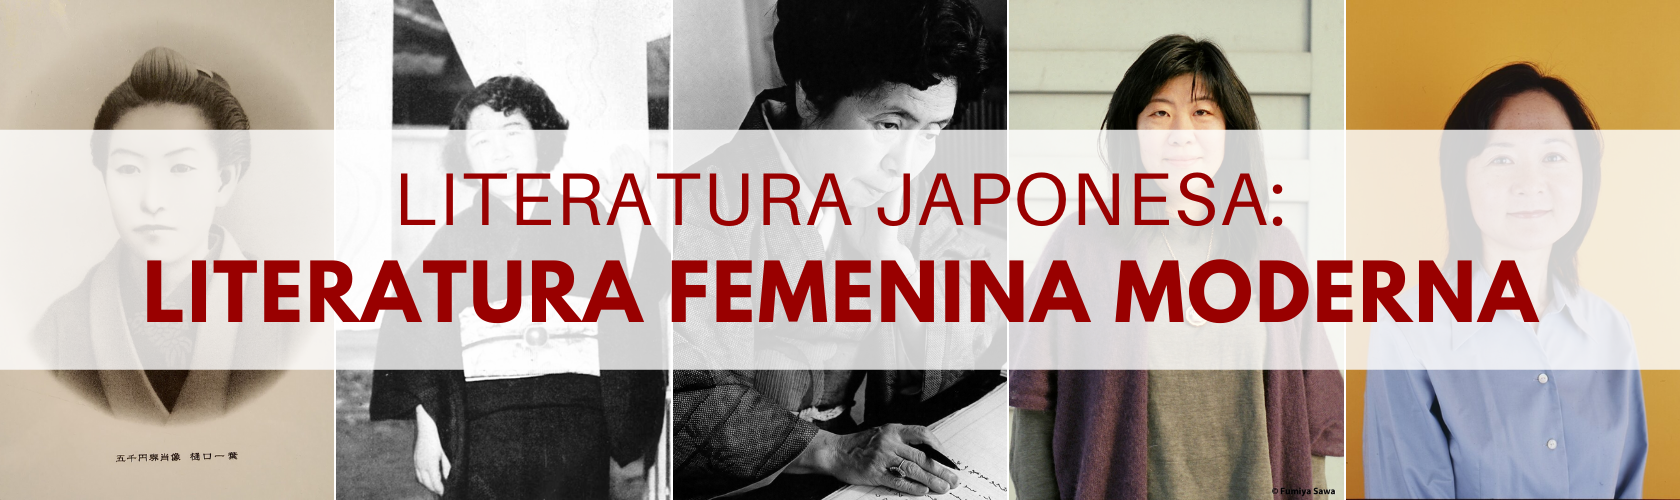 literatura femenina moderna de Japón